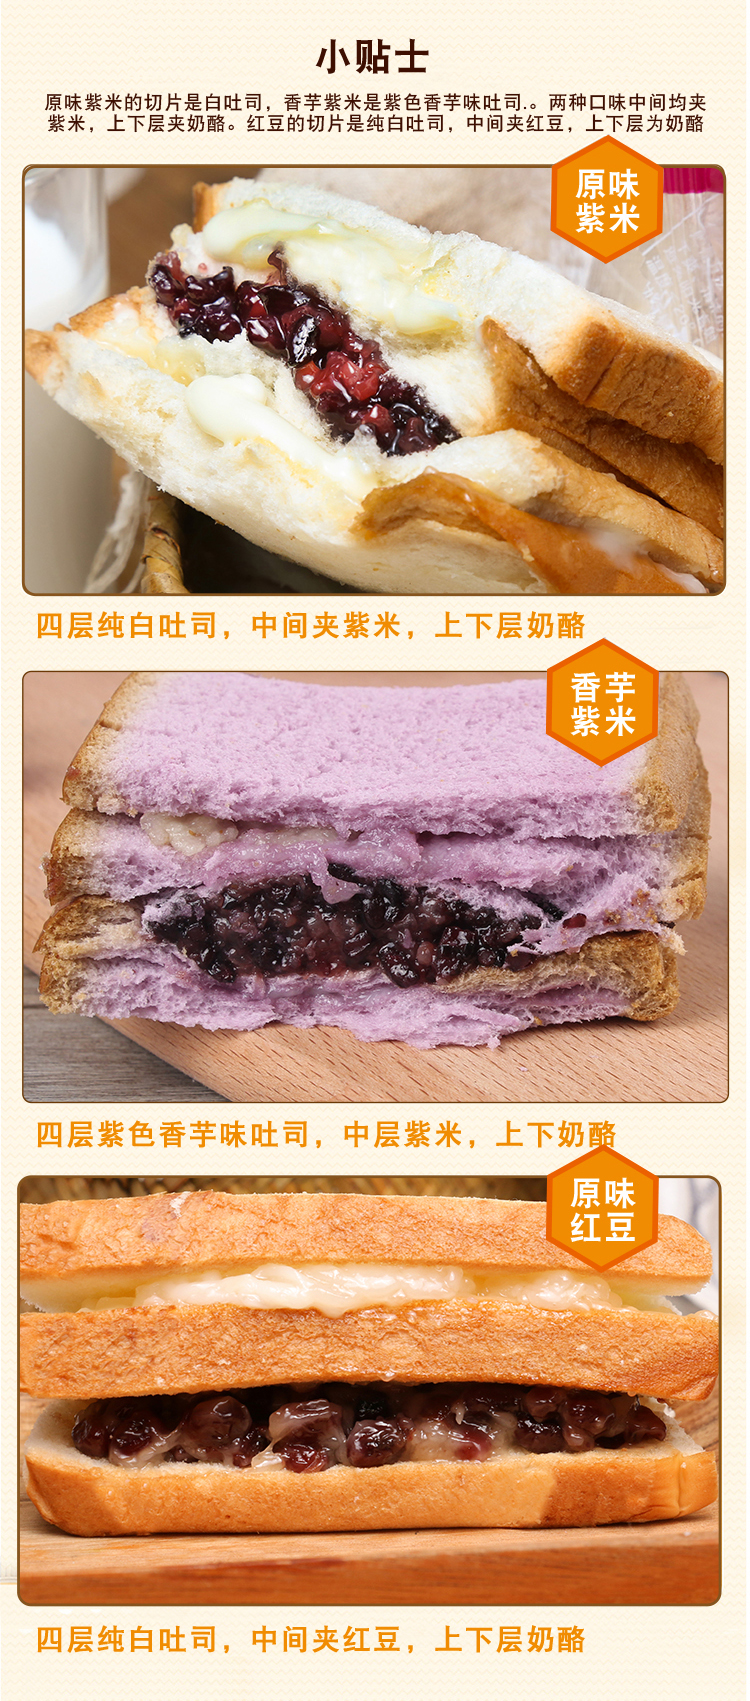  紫米面包黑米夹心切片糯米香芋面包早餐吐司奶油面包紫米奶酪面包